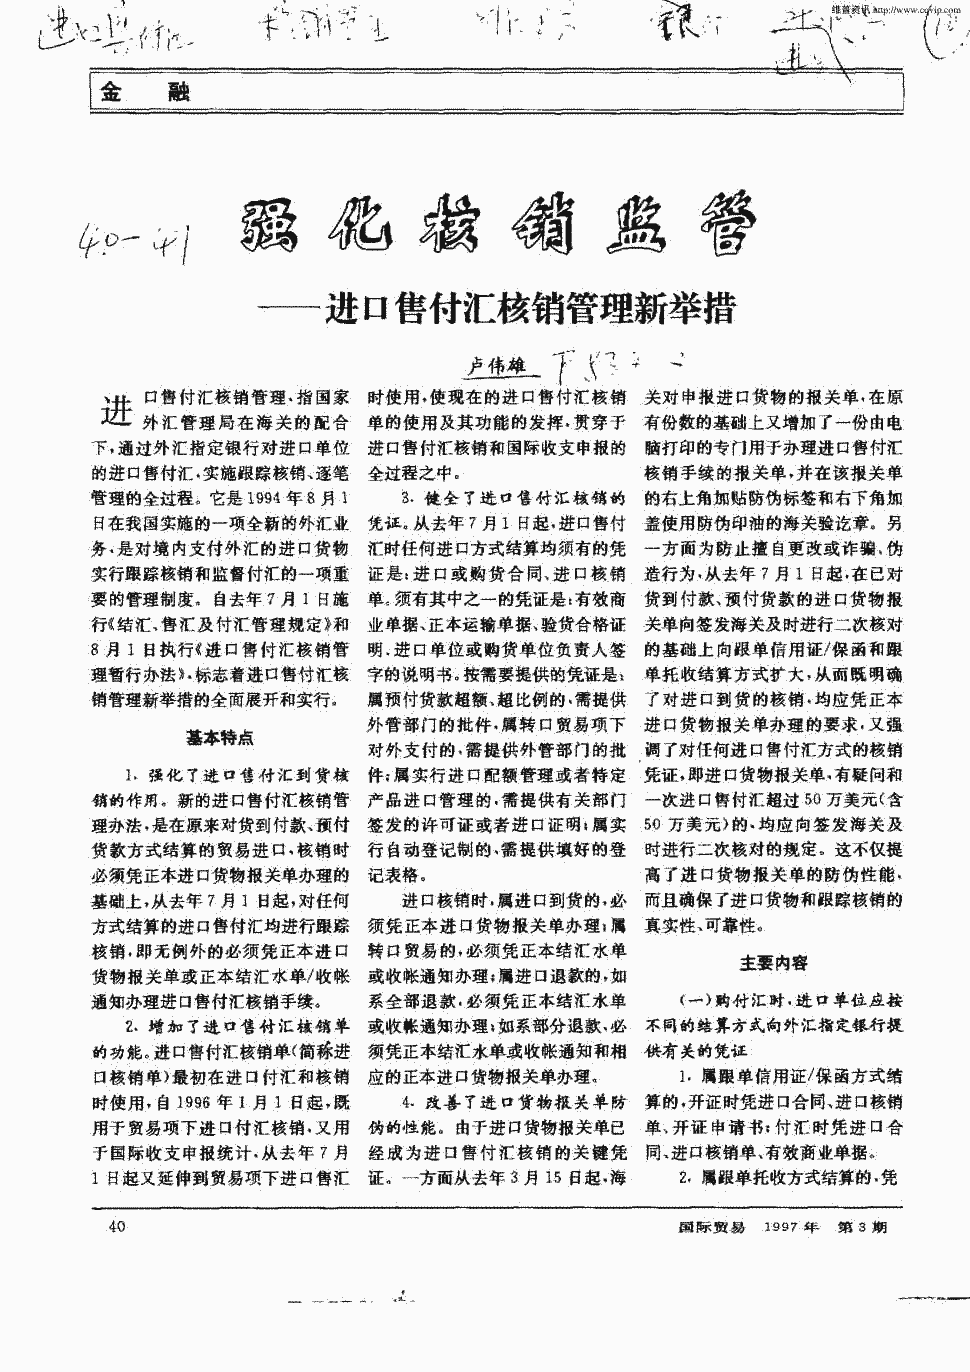 《国际贸易》1997年第3期 40-41,共2页卢伟雄